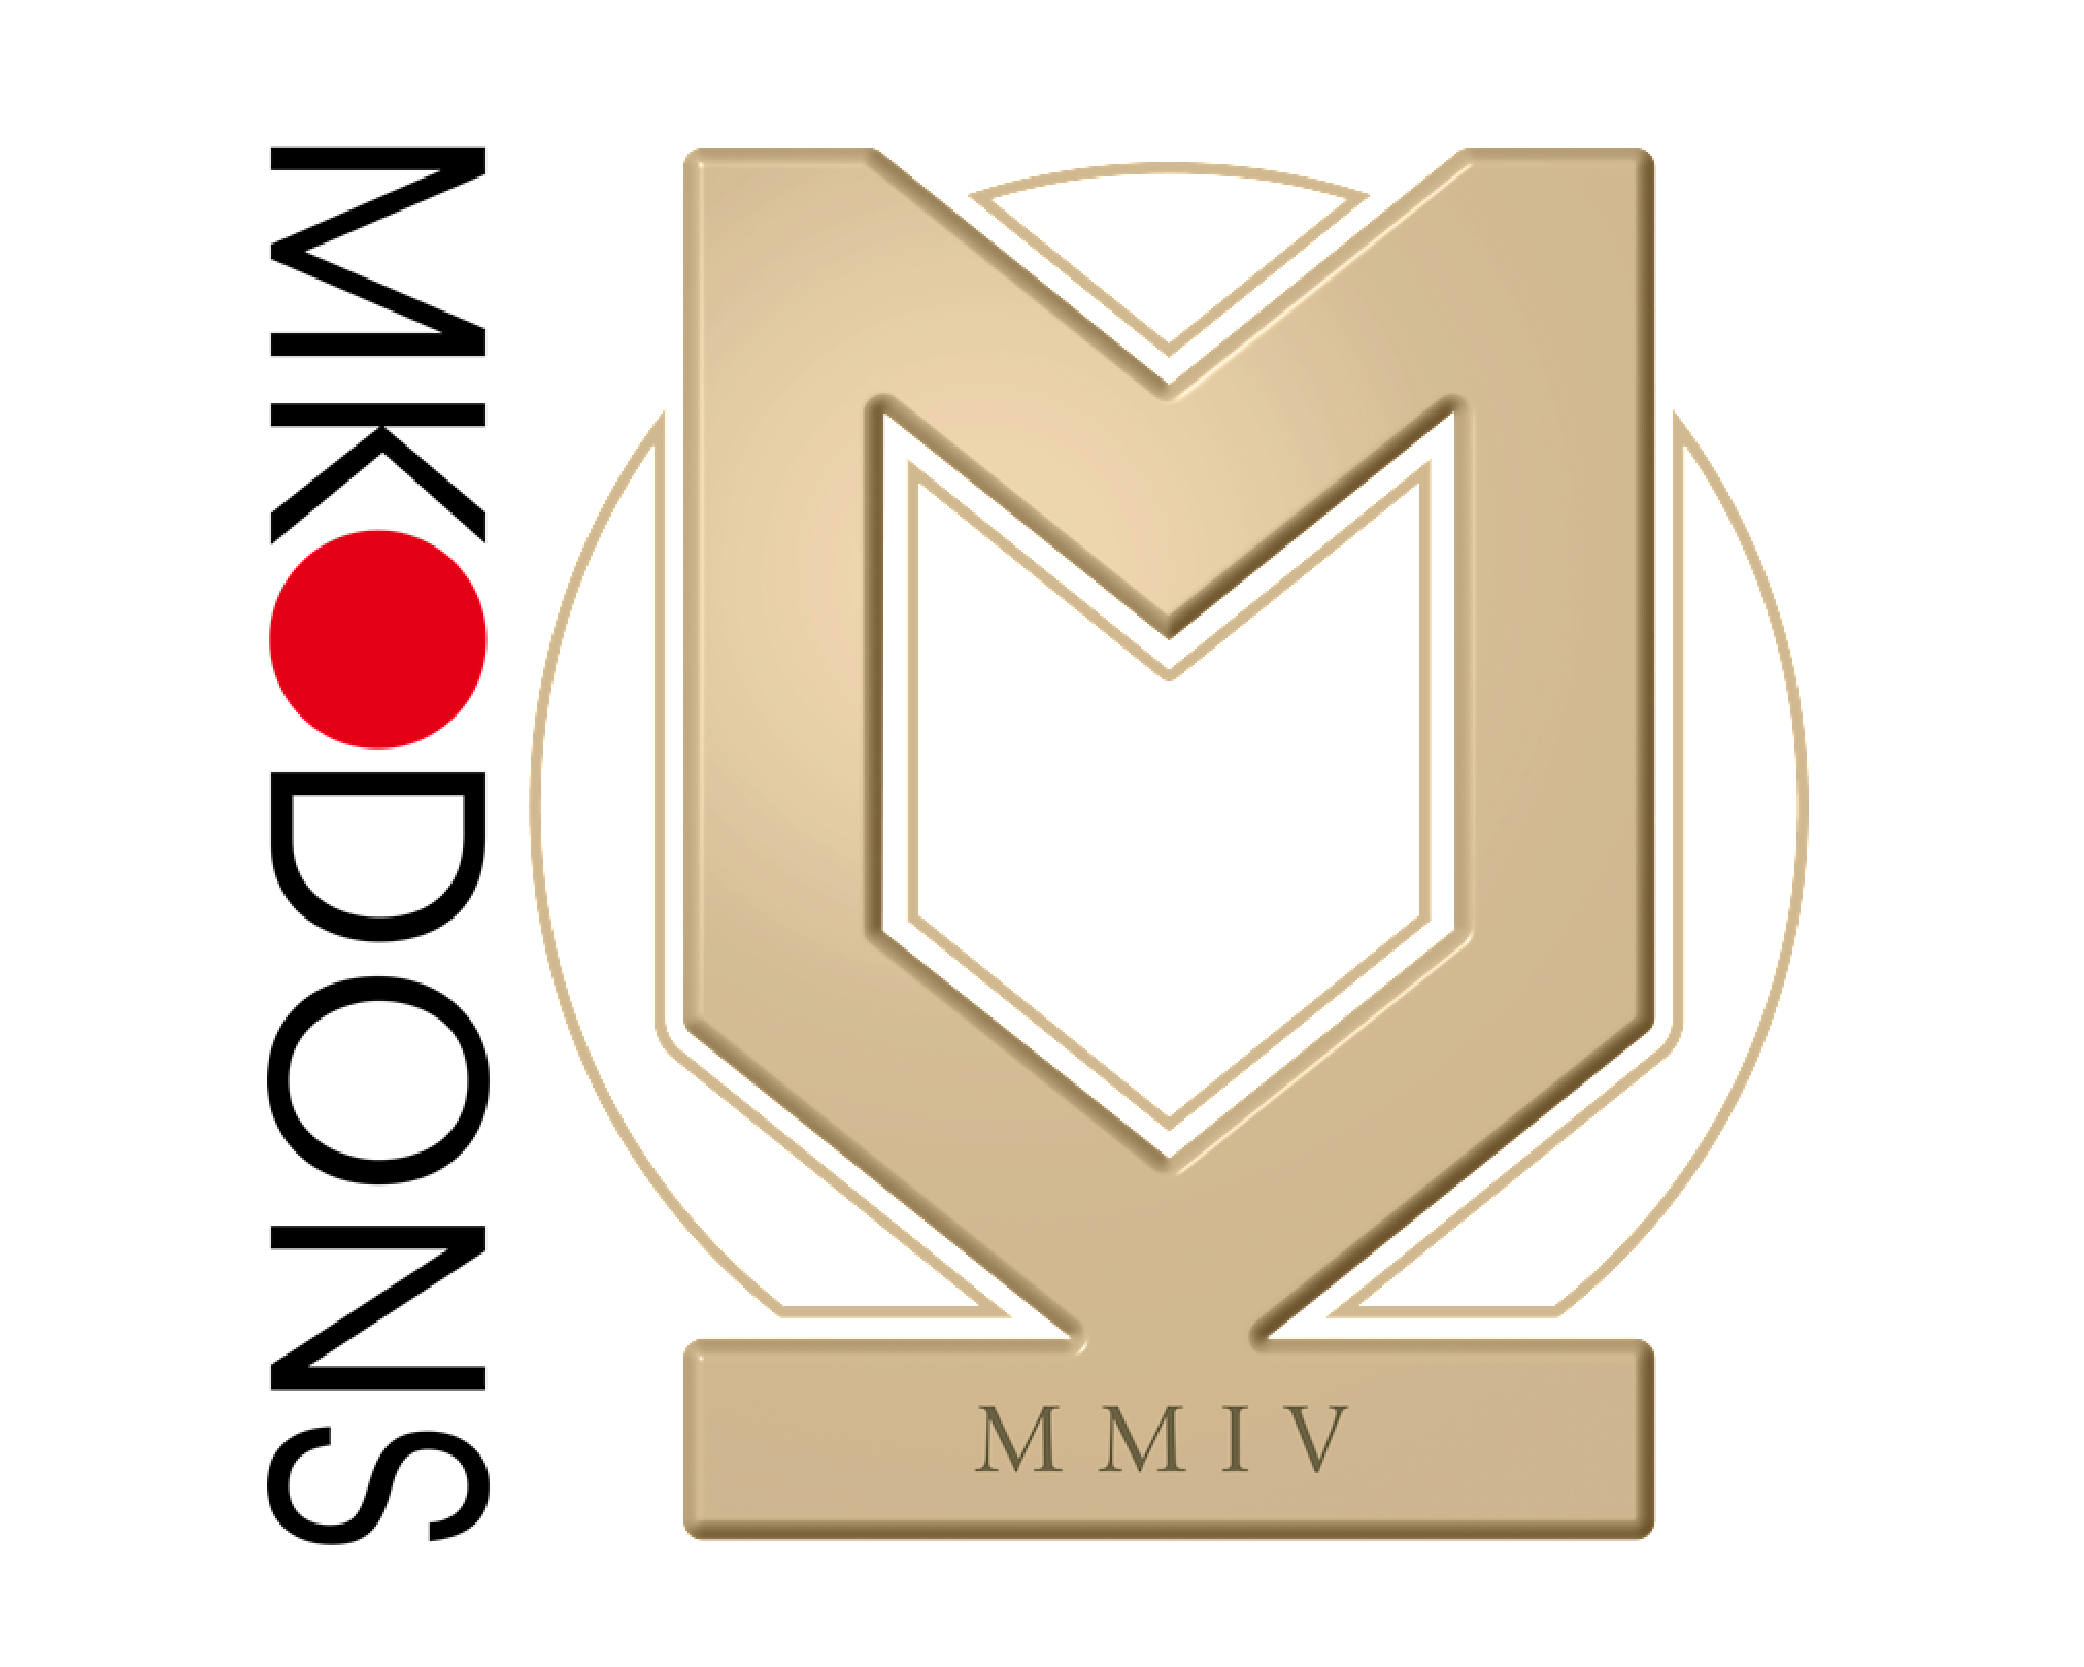 MK Dons vs Morecambe